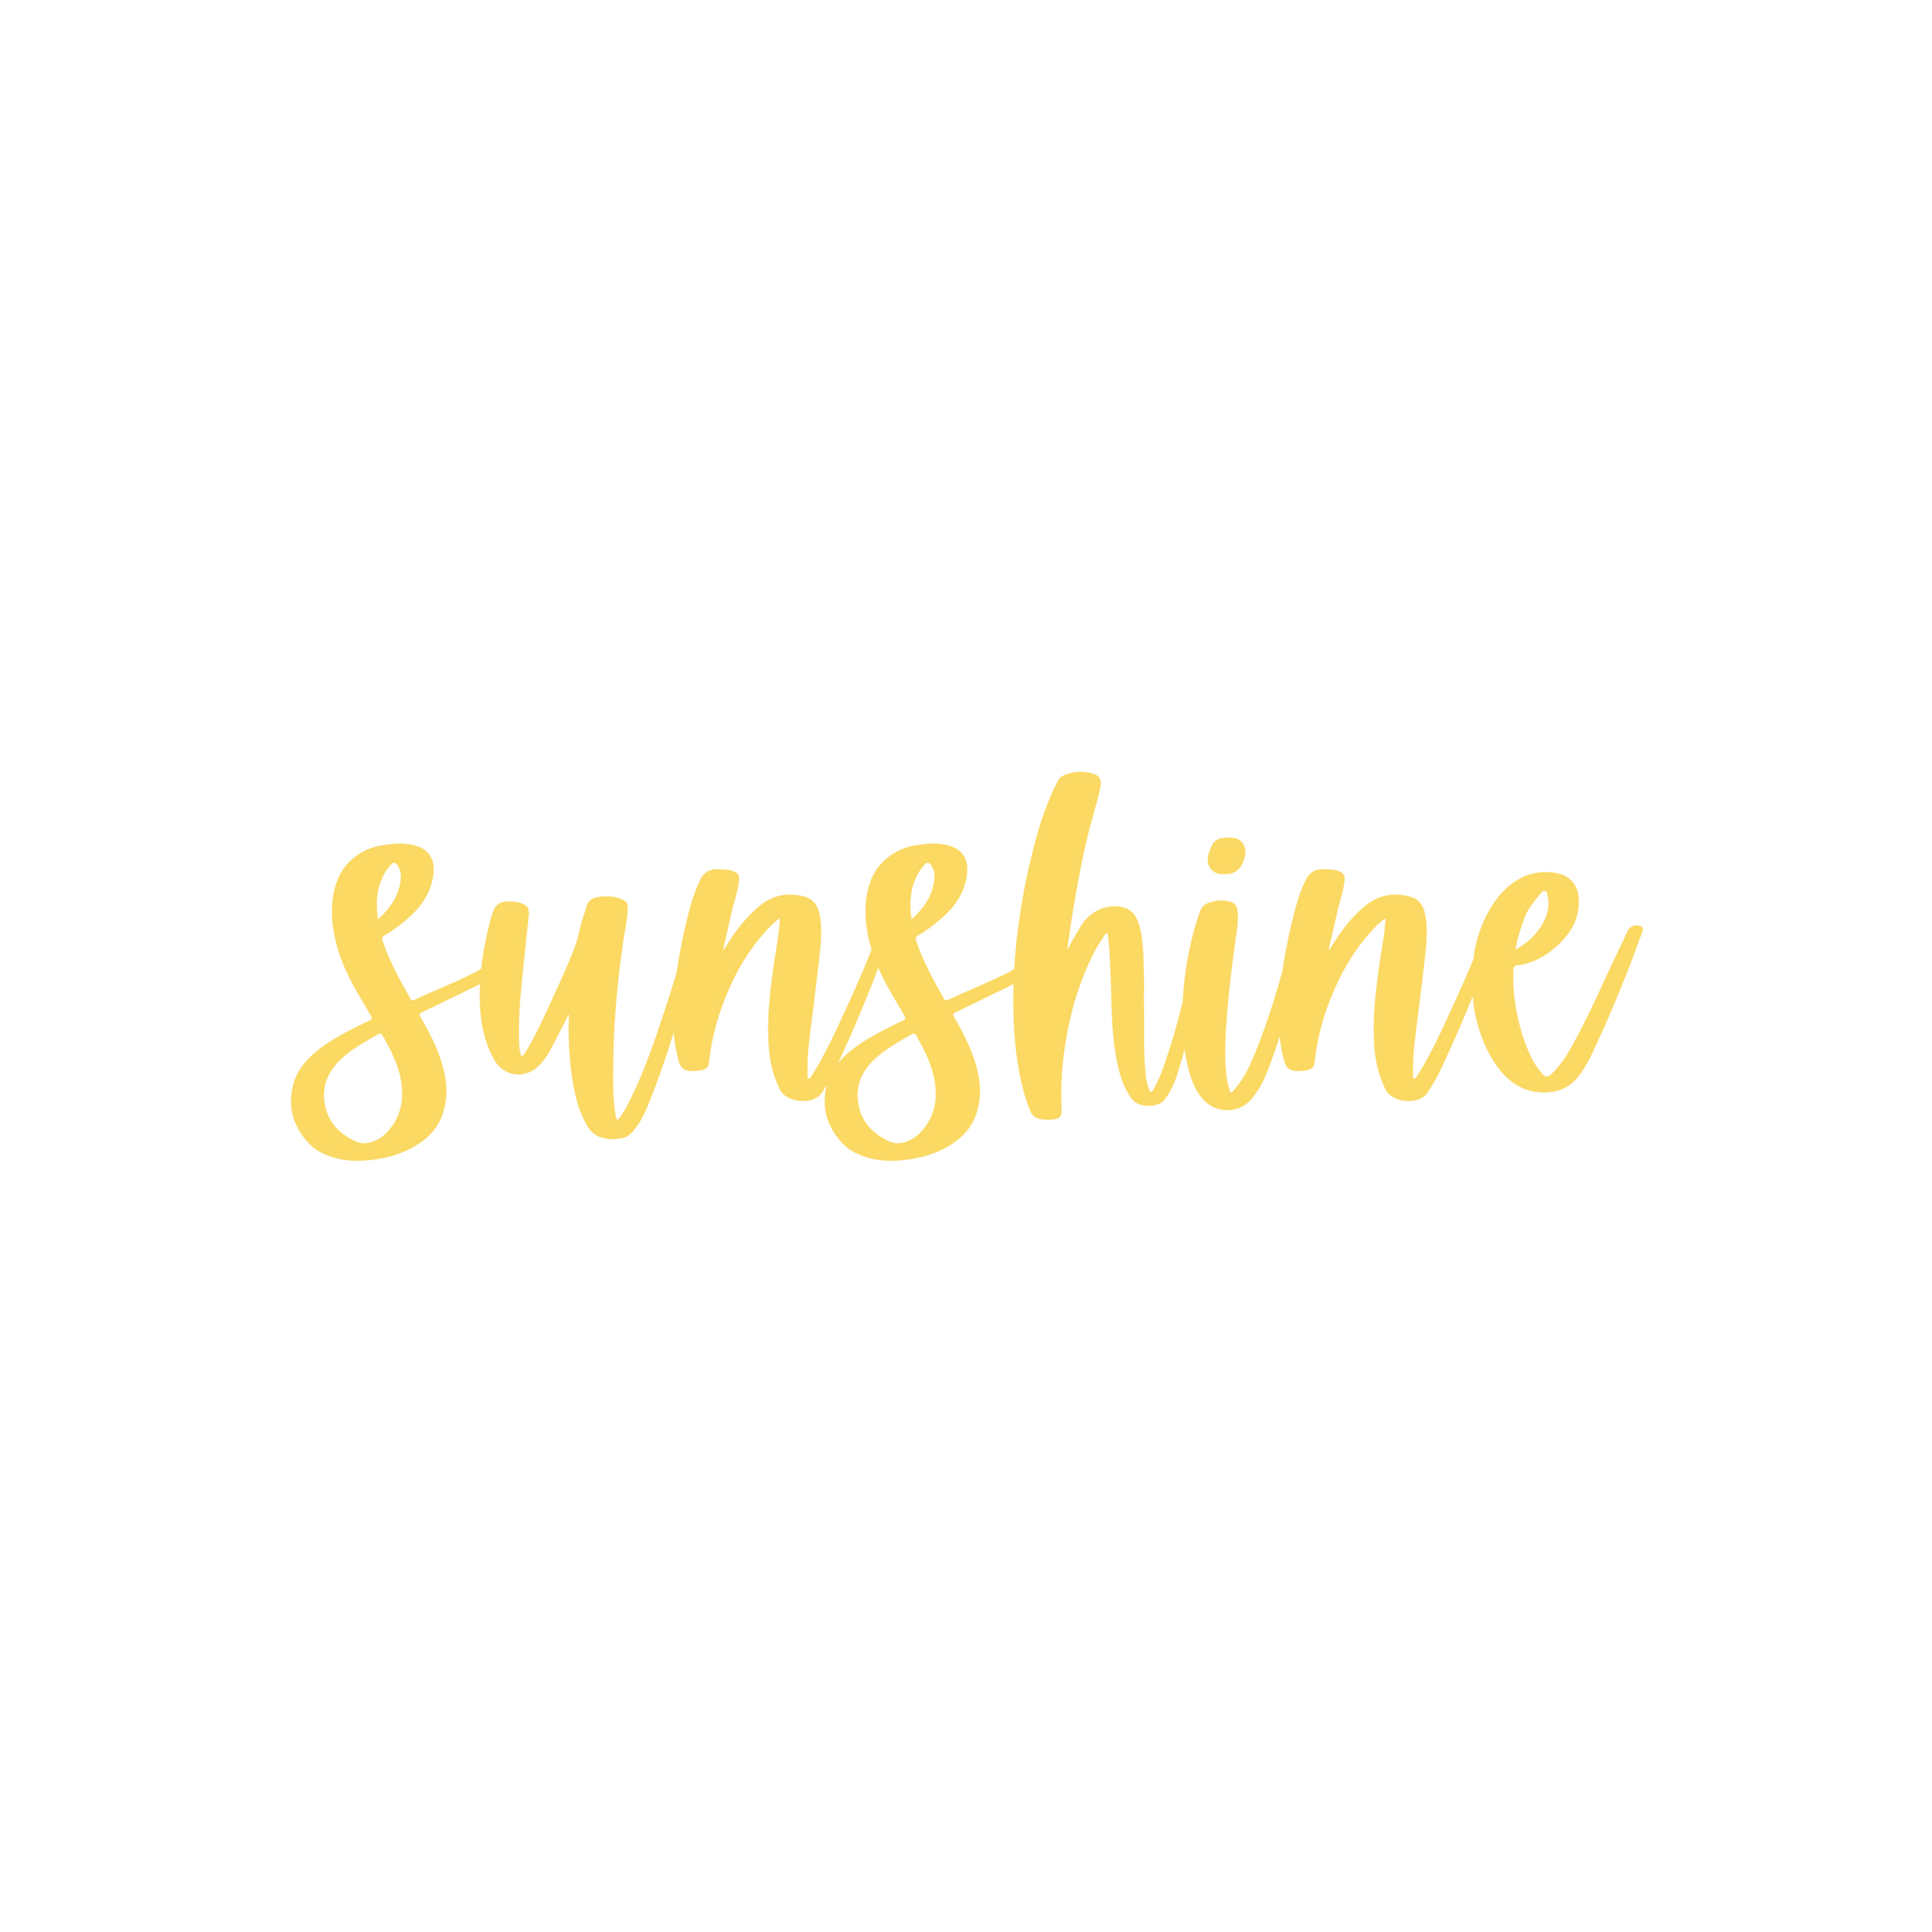 sunshine  Tradução de sunshine no Dicionário Infopédia de Inglês